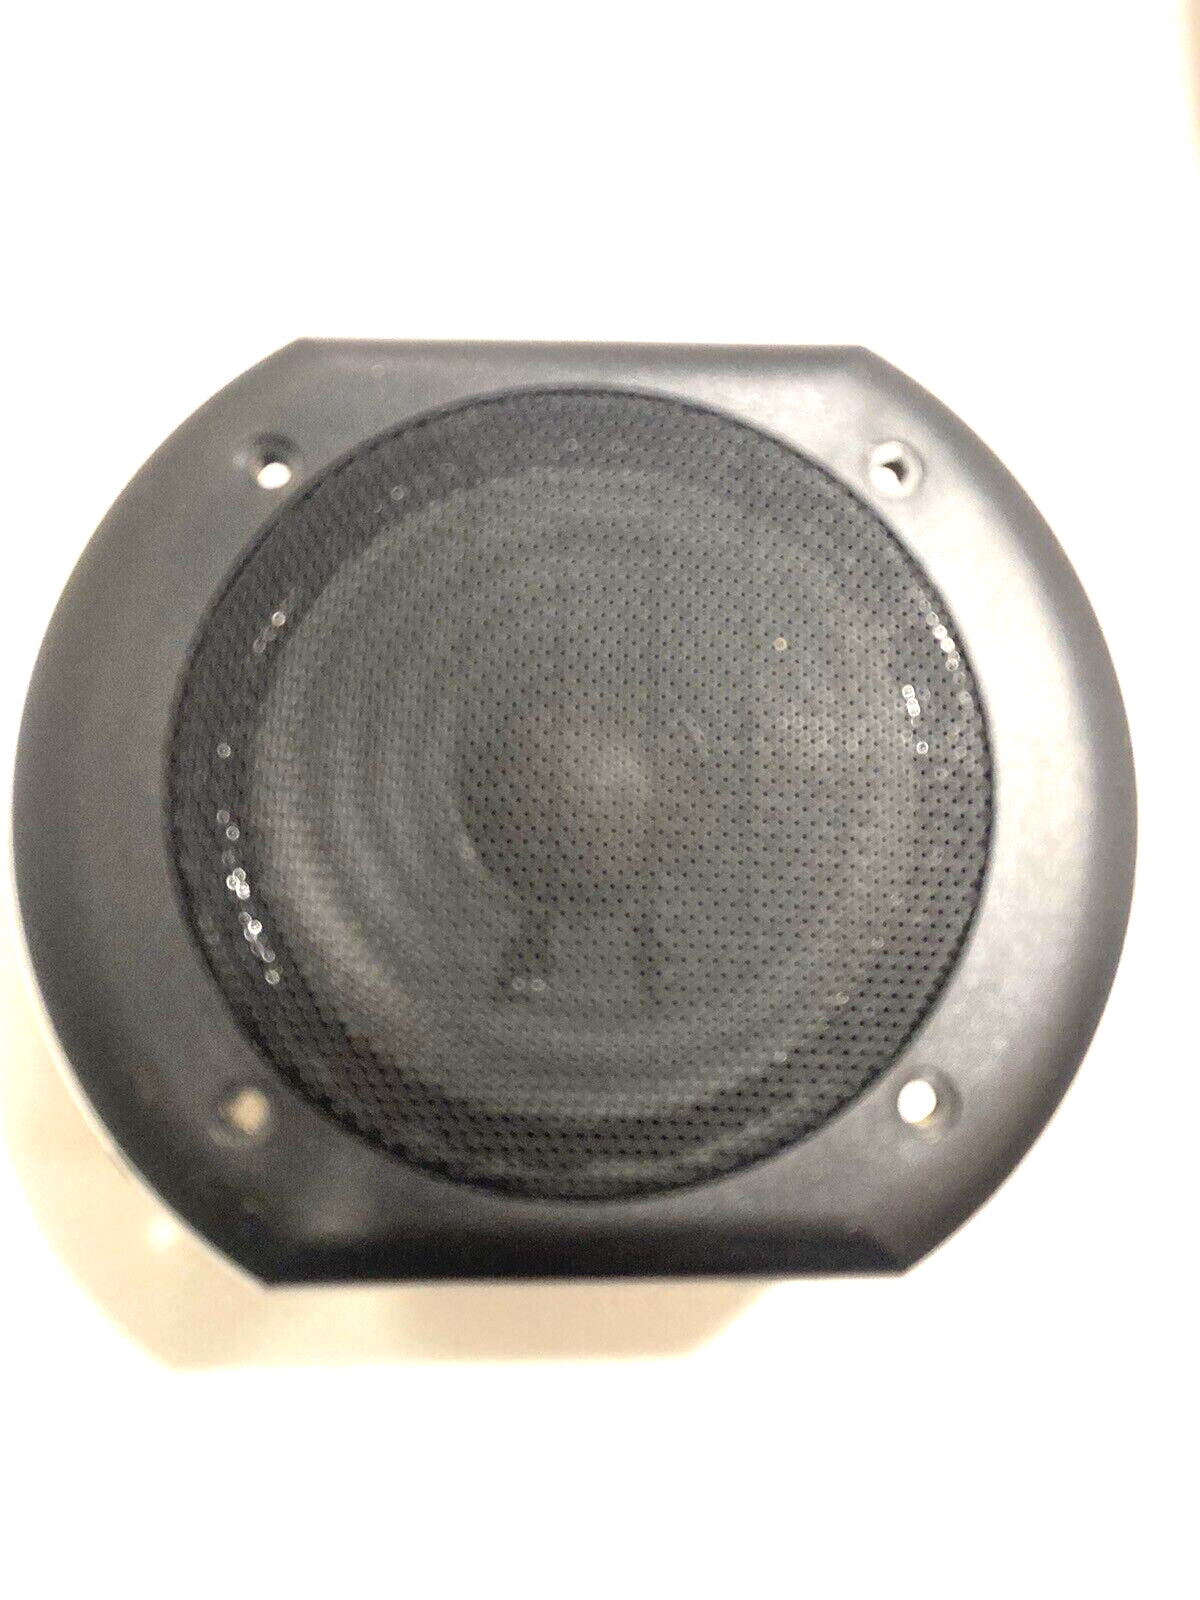 Cerwin Vega VS-100 Speaker - Midrange Speaker  with Screws. Tested  OEM